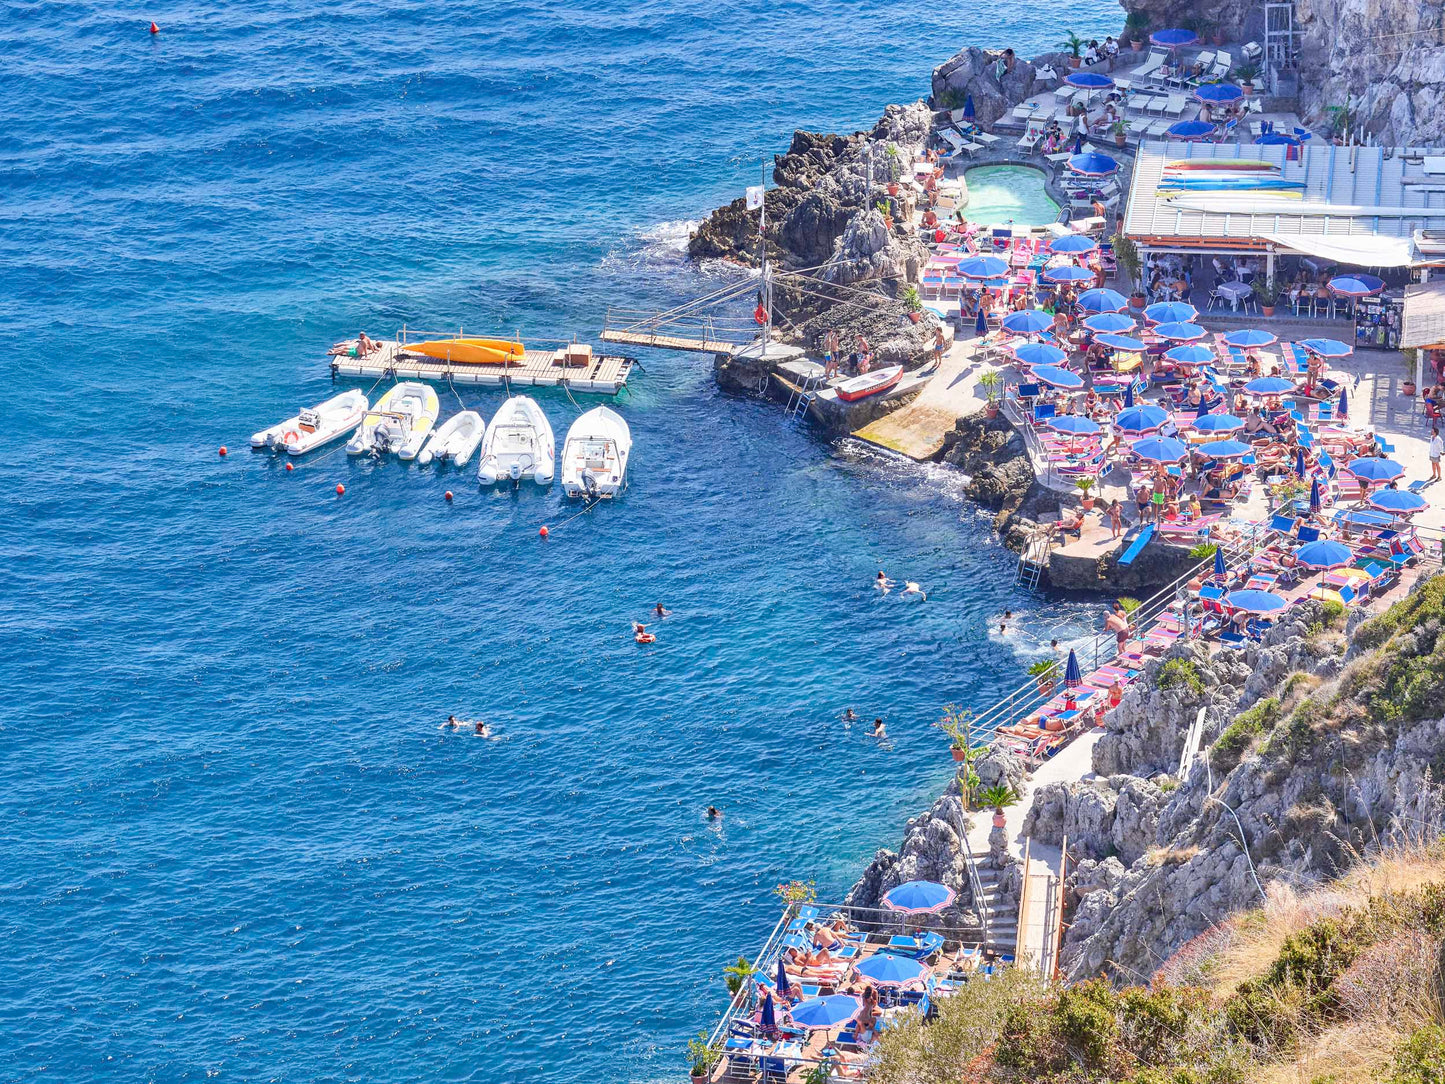 Capo Di Conca I - Amalfi Coast, Italy